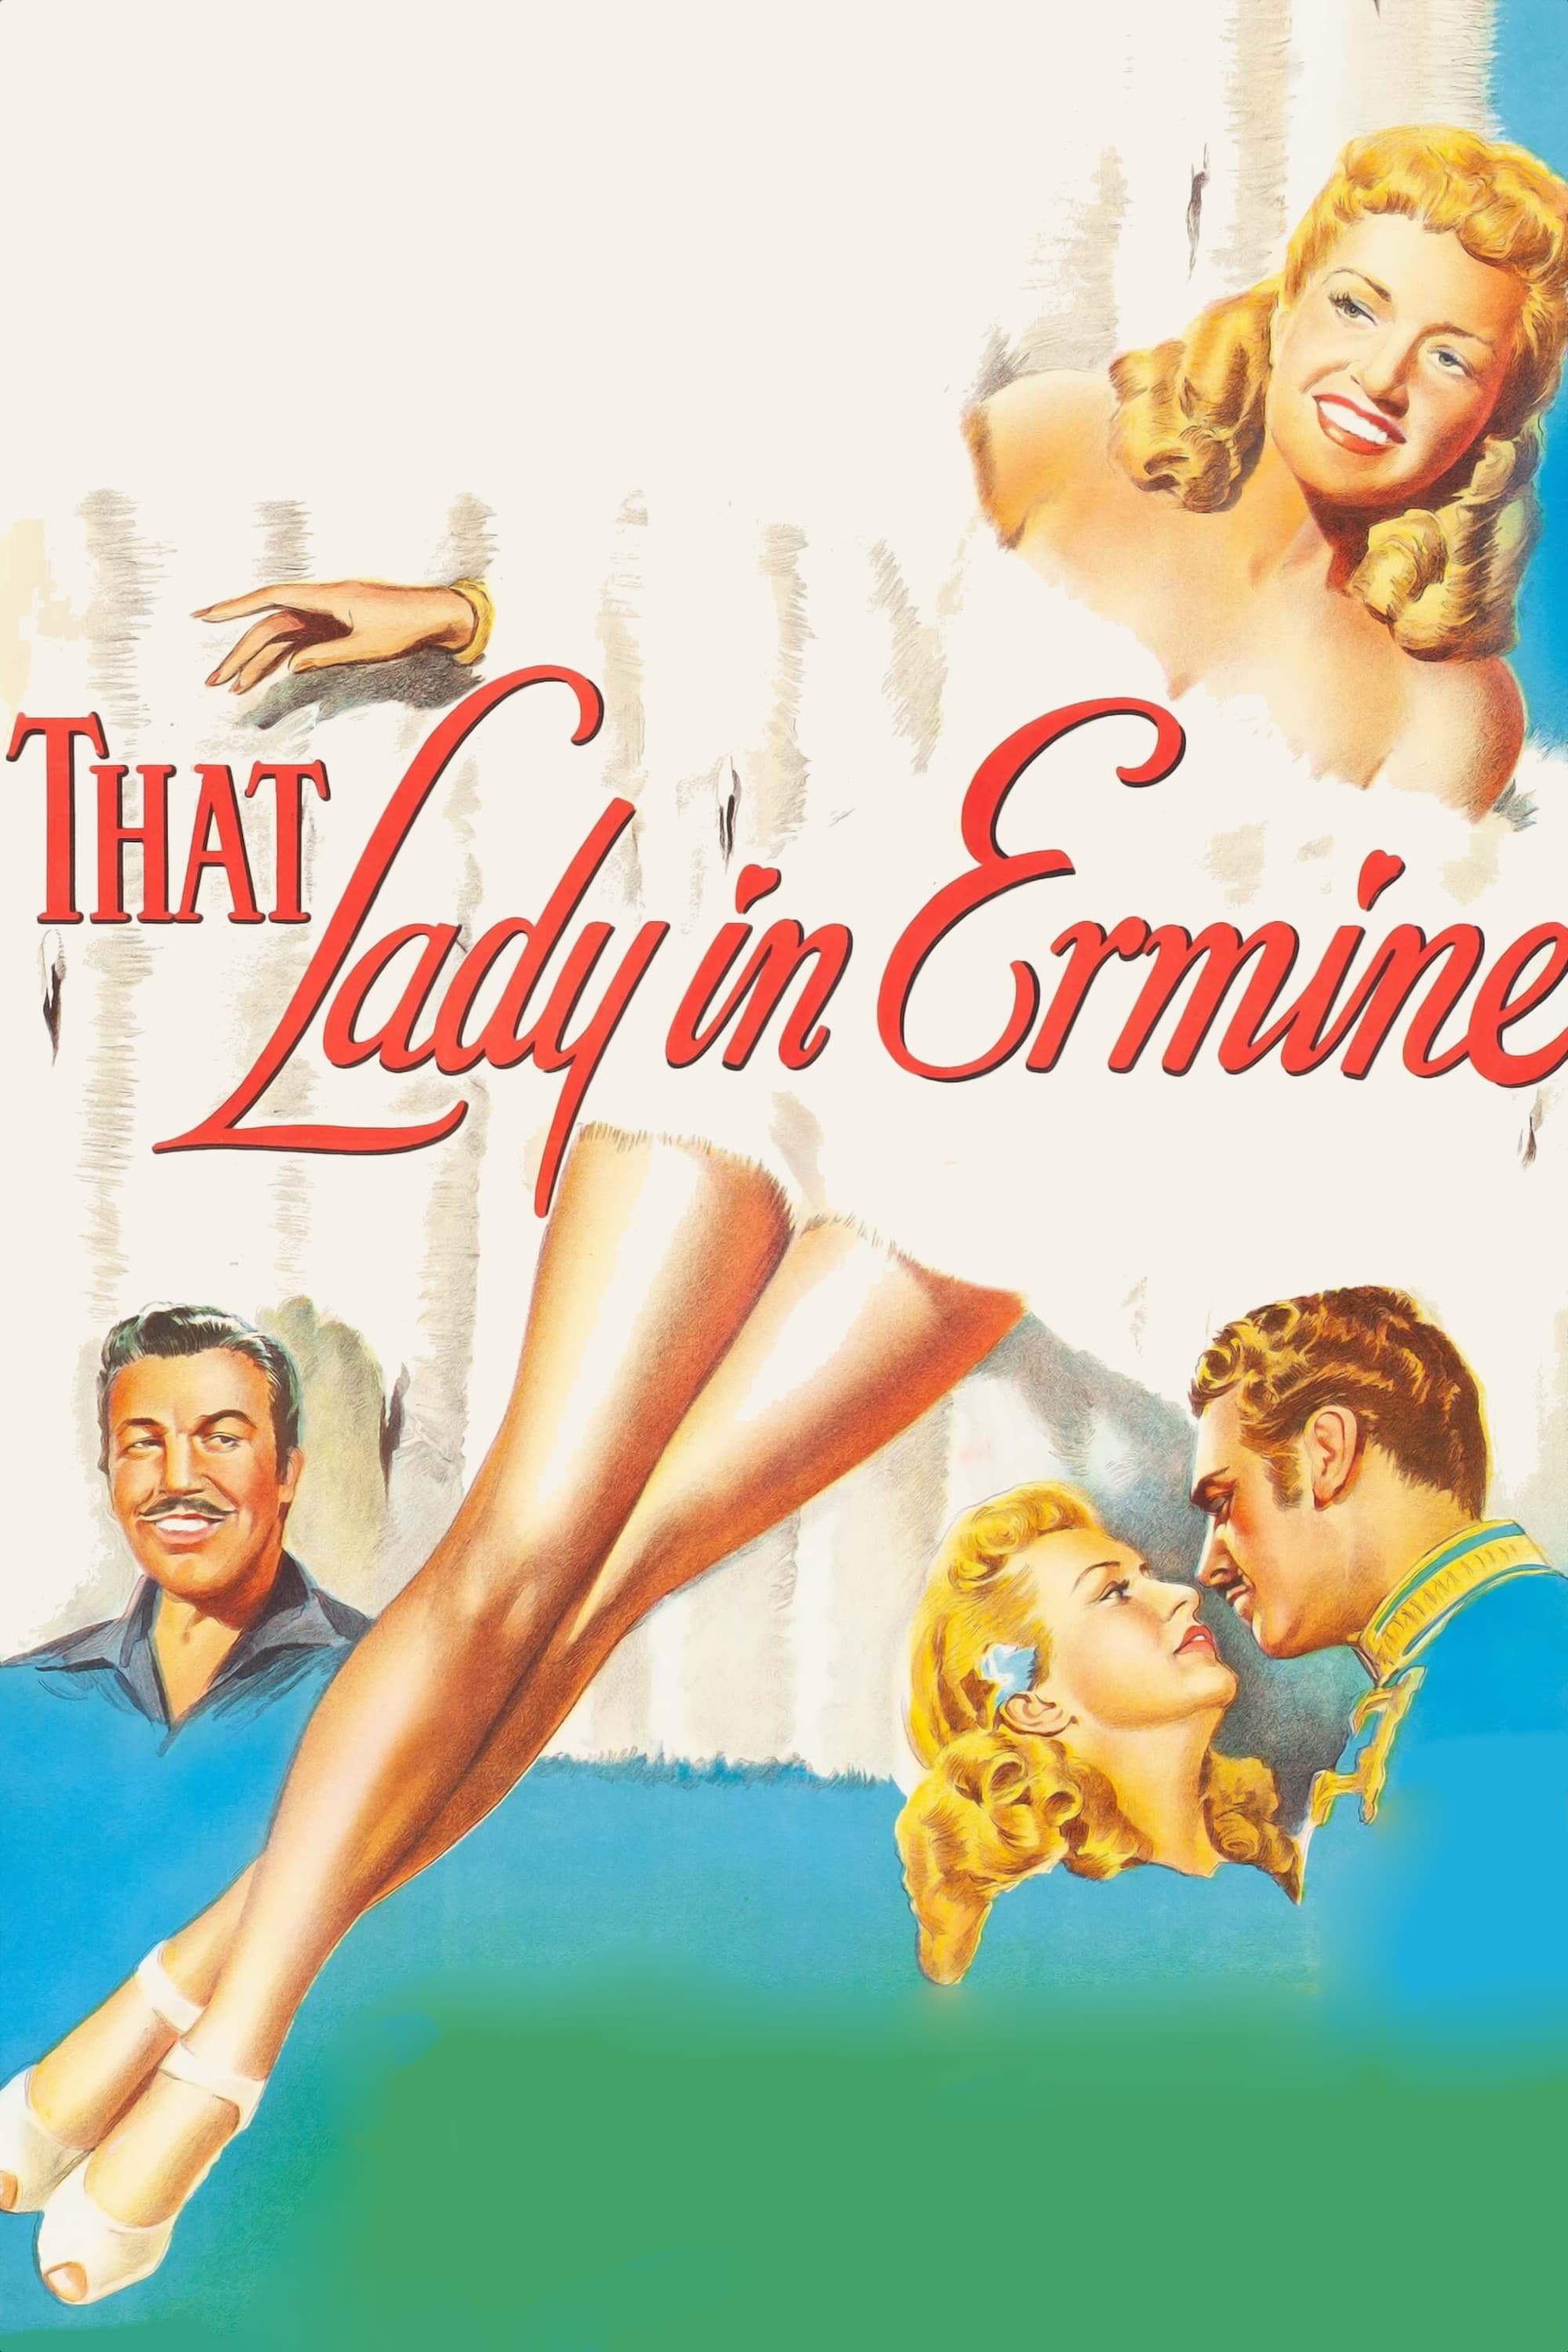 La dama de armiño (1948)